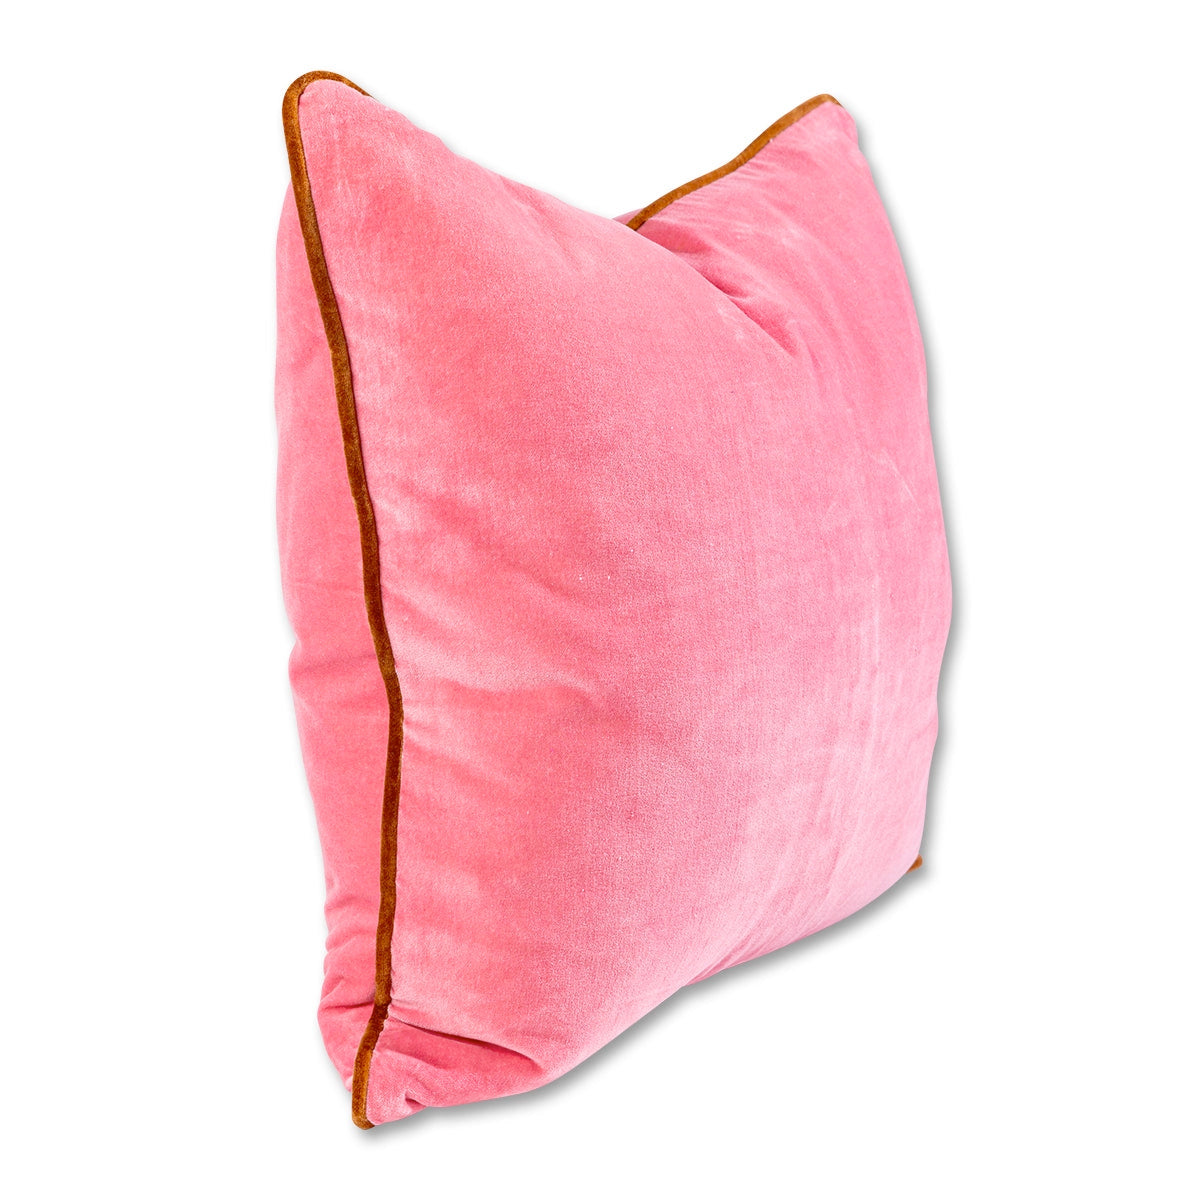 Charliss Velvet Pillow